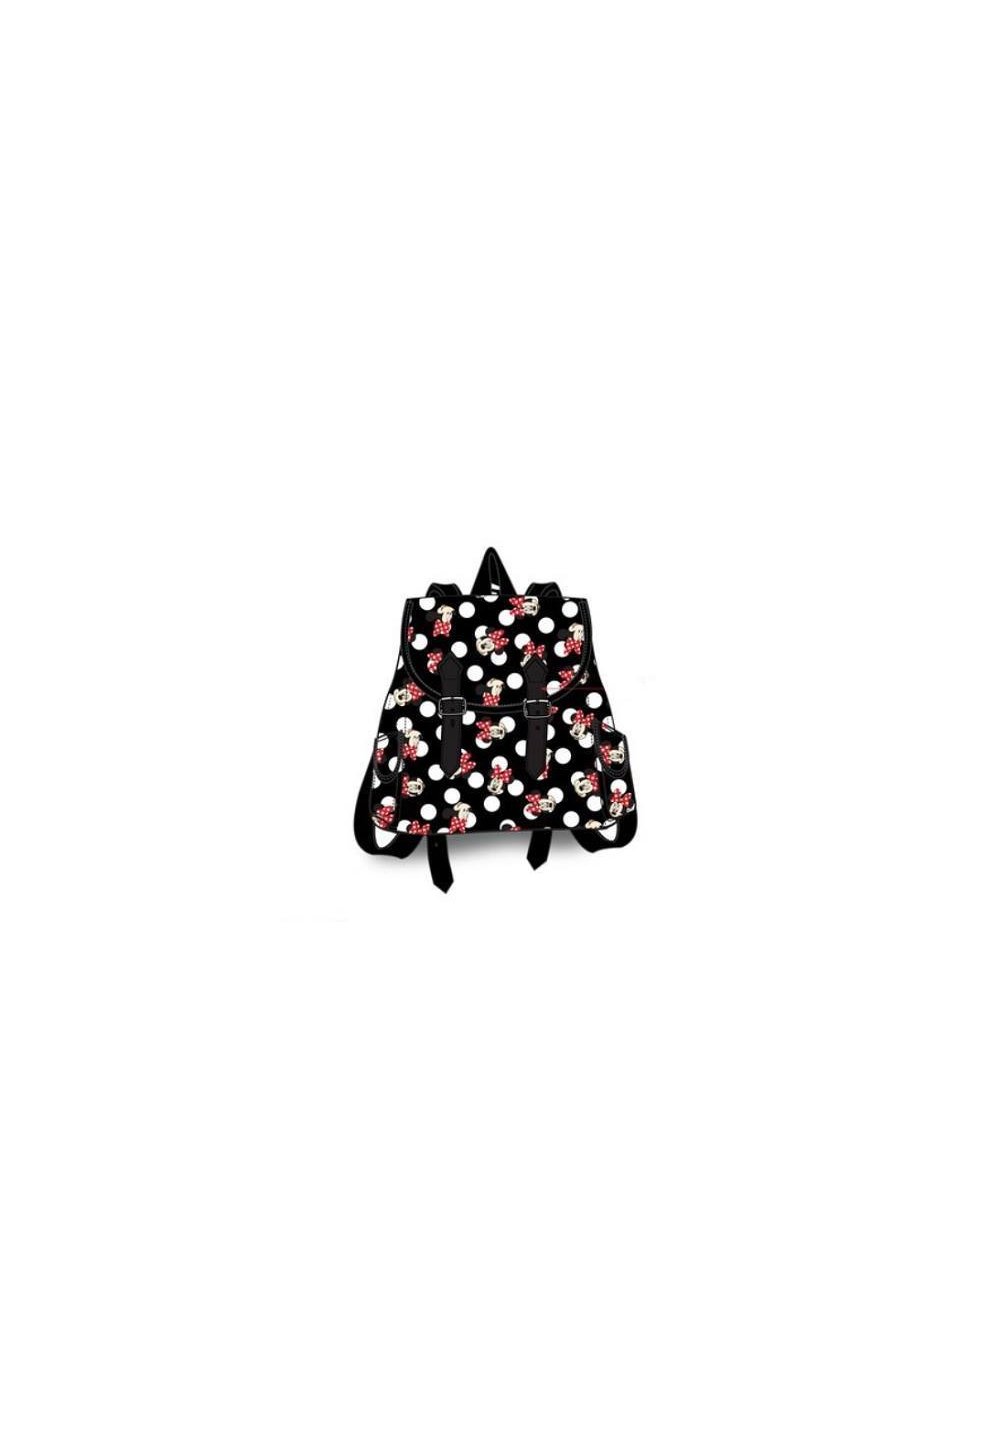 Ghiozdan, Minnie Mouse, negru cu print, 25 x 19 x 9 cm Prichindel